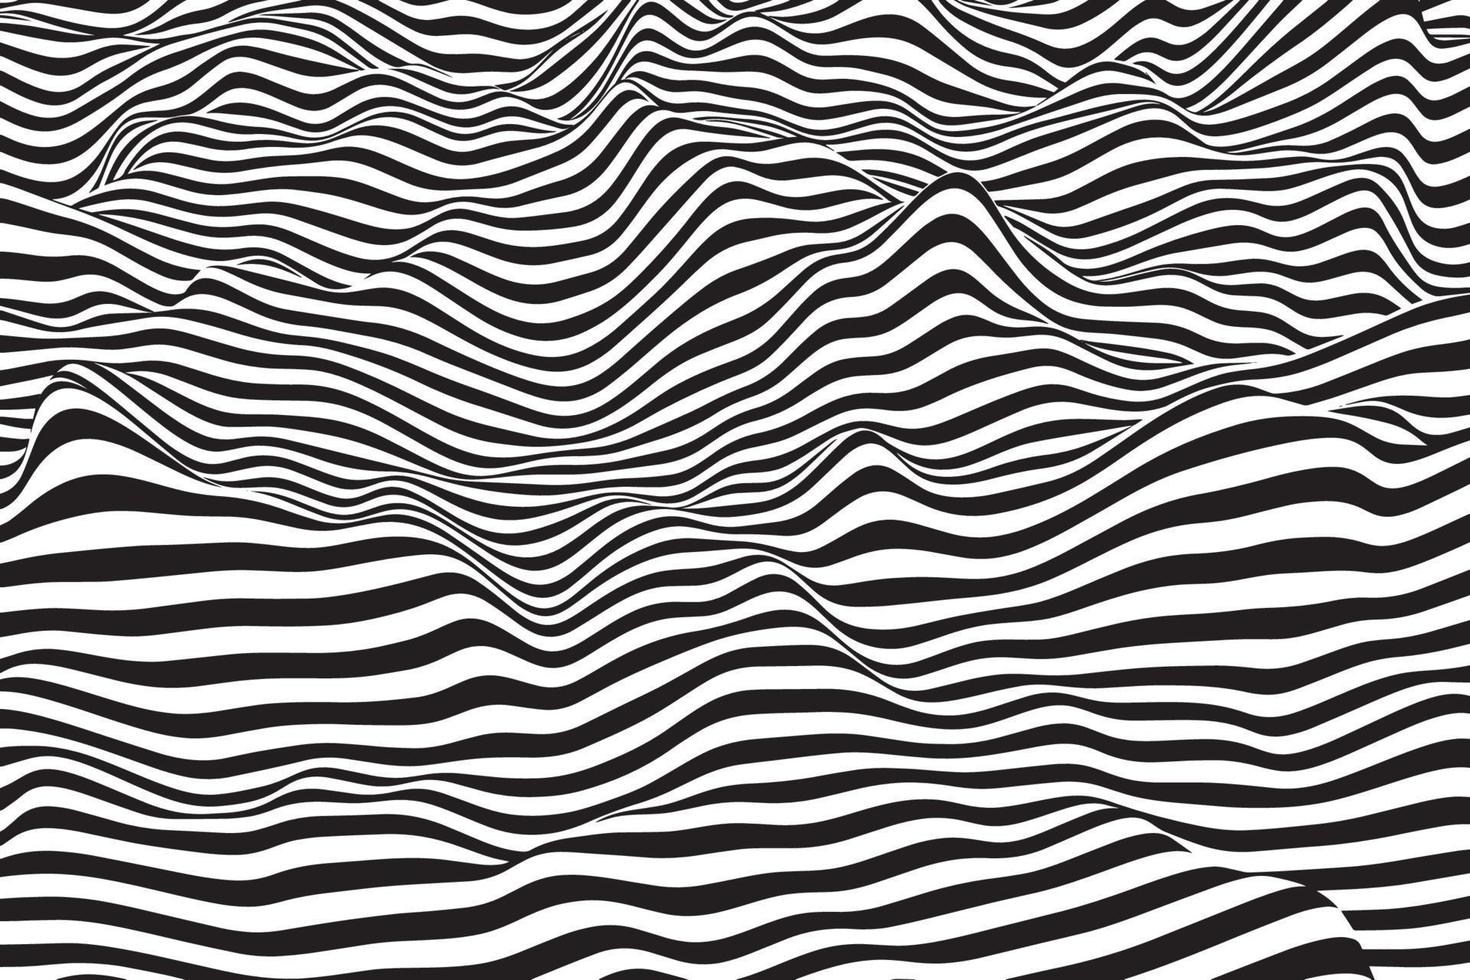 dynamische gebogen golflijnen achtergrond. trendy strepen textuur illustratie. abstract zwart-wit vloeibaar gedraaid patroon vector